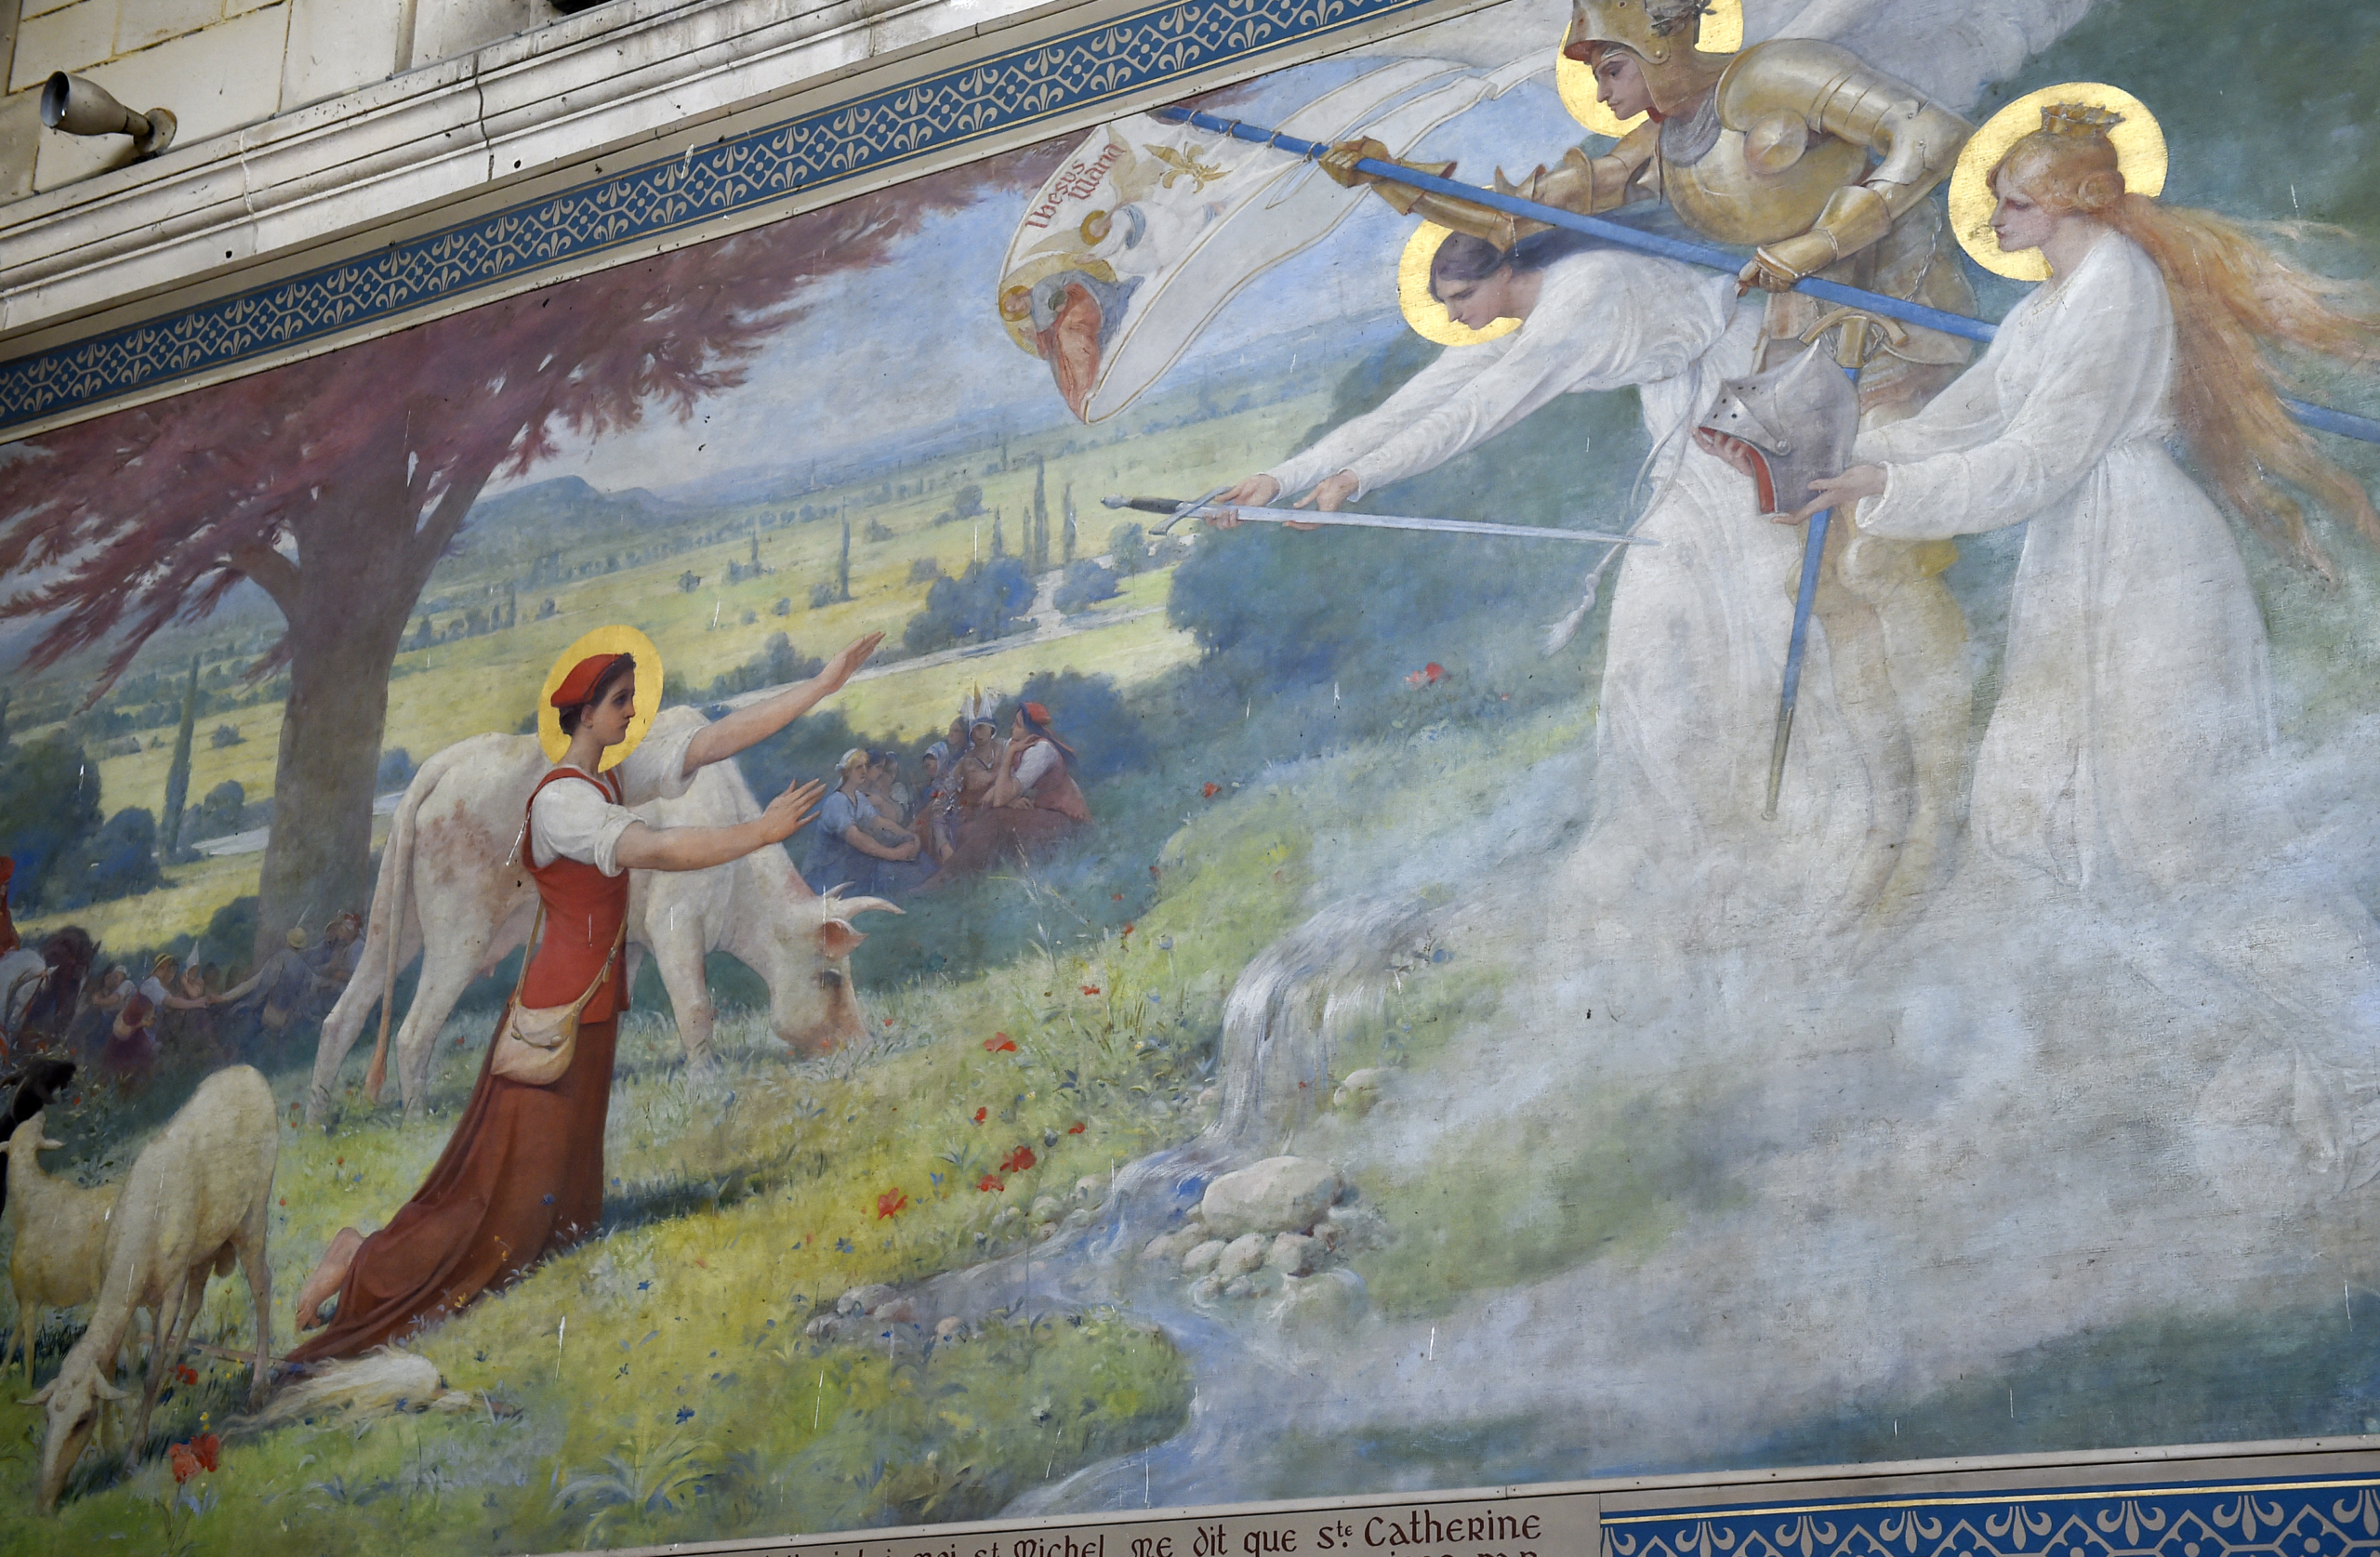 Khi cô gái chăn cừu Jeanne d'Arc 16 tuổi, cô đã gặp Thiên sứ. Từ đó nhận được khải thị của Chúa, muốn cô thu hồi vùng đất Pháp đang bị người Anh chiếm đóng. Ảnh chụp một bức bích họa miêu tả cuộc đời của Jeanne d'Arc trong nhà thờ Domremy-la-Pucelle ở miền Đông nước Pháp. (Ảnh: Jean-Christophe Verhaegen / AFP)